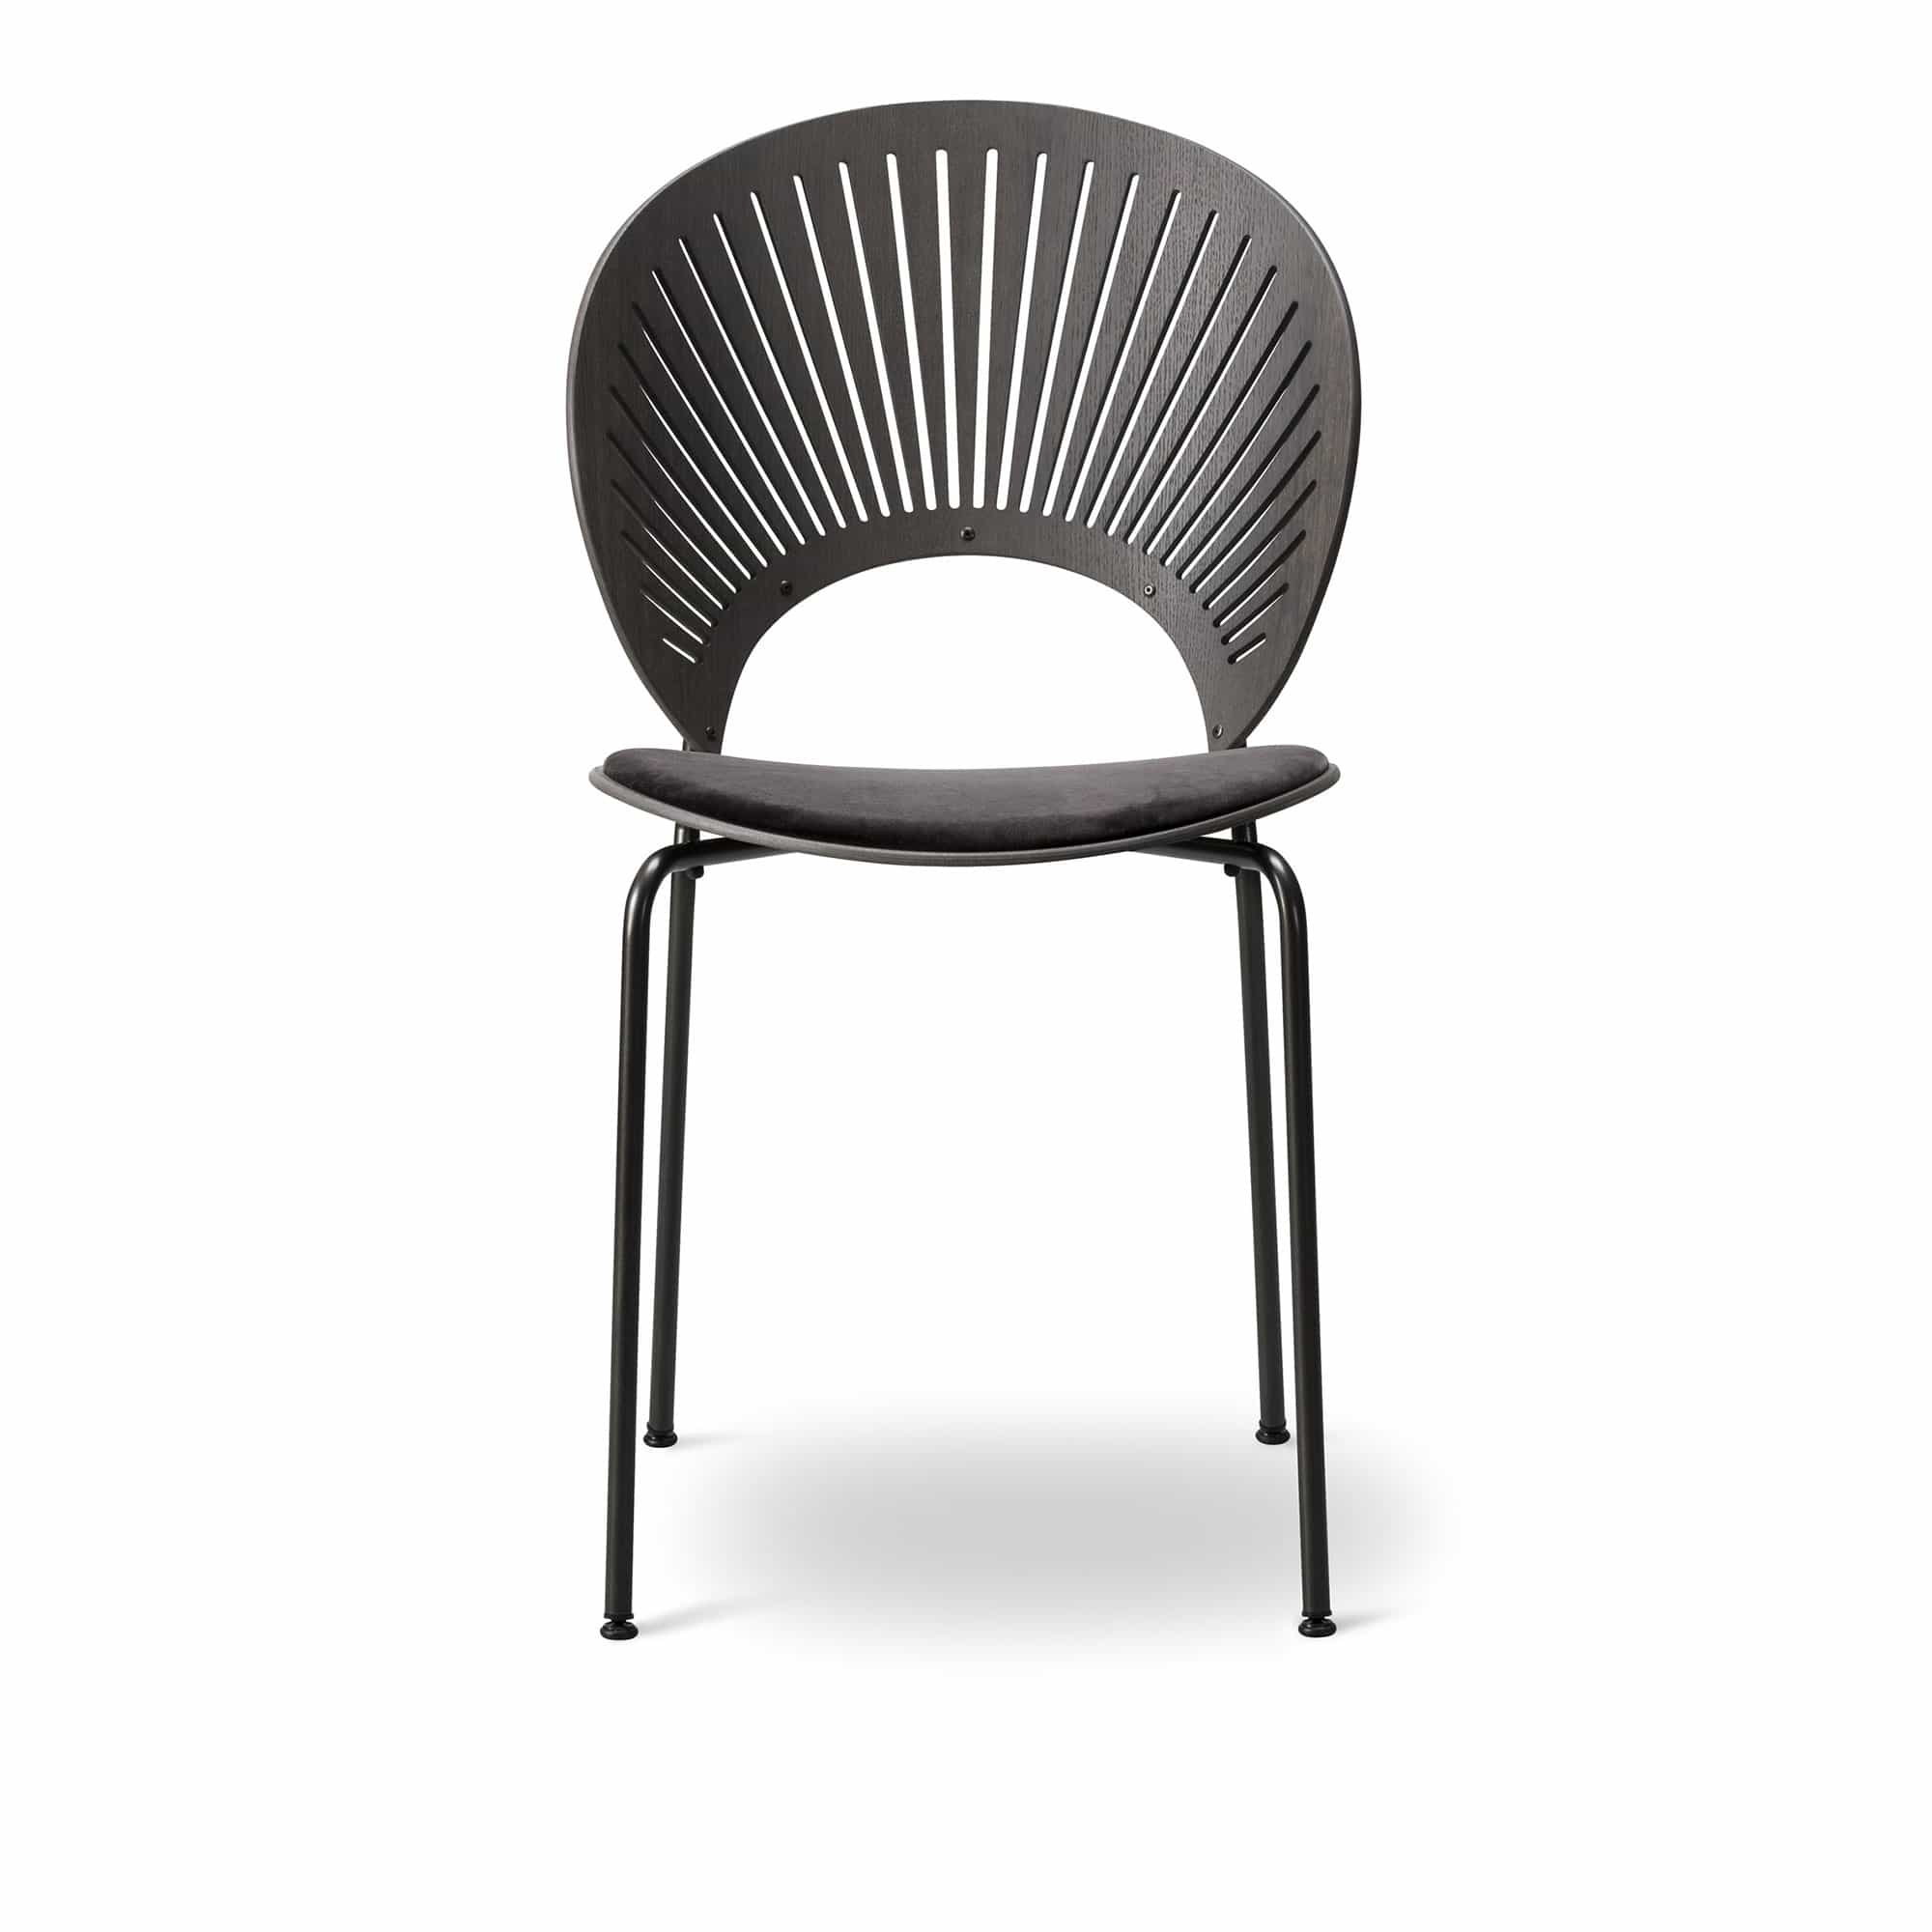 Trinidad Chair - Klädd sits